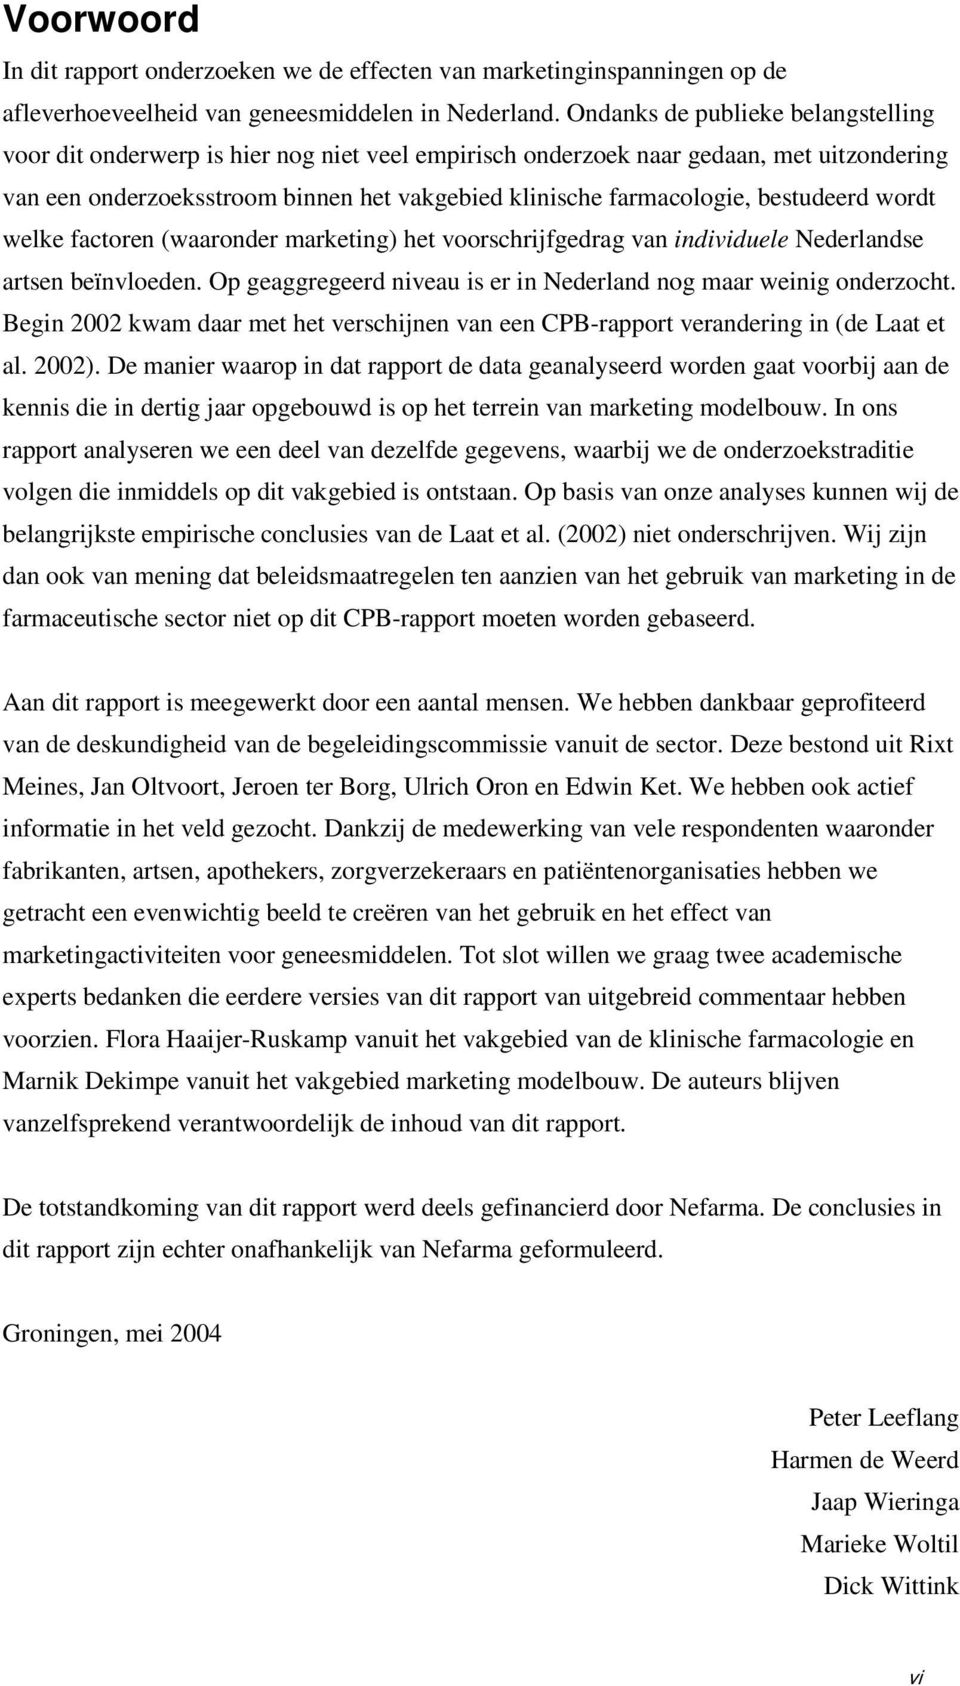 bestudeerd wordt welke factoren (waaronder marketing) het voorschrijfgedrag van individuele Nederlandse artsen beïnvloeden. Op geaggregeerd niveau is er in Nederland nog maar weinig onderzocht.